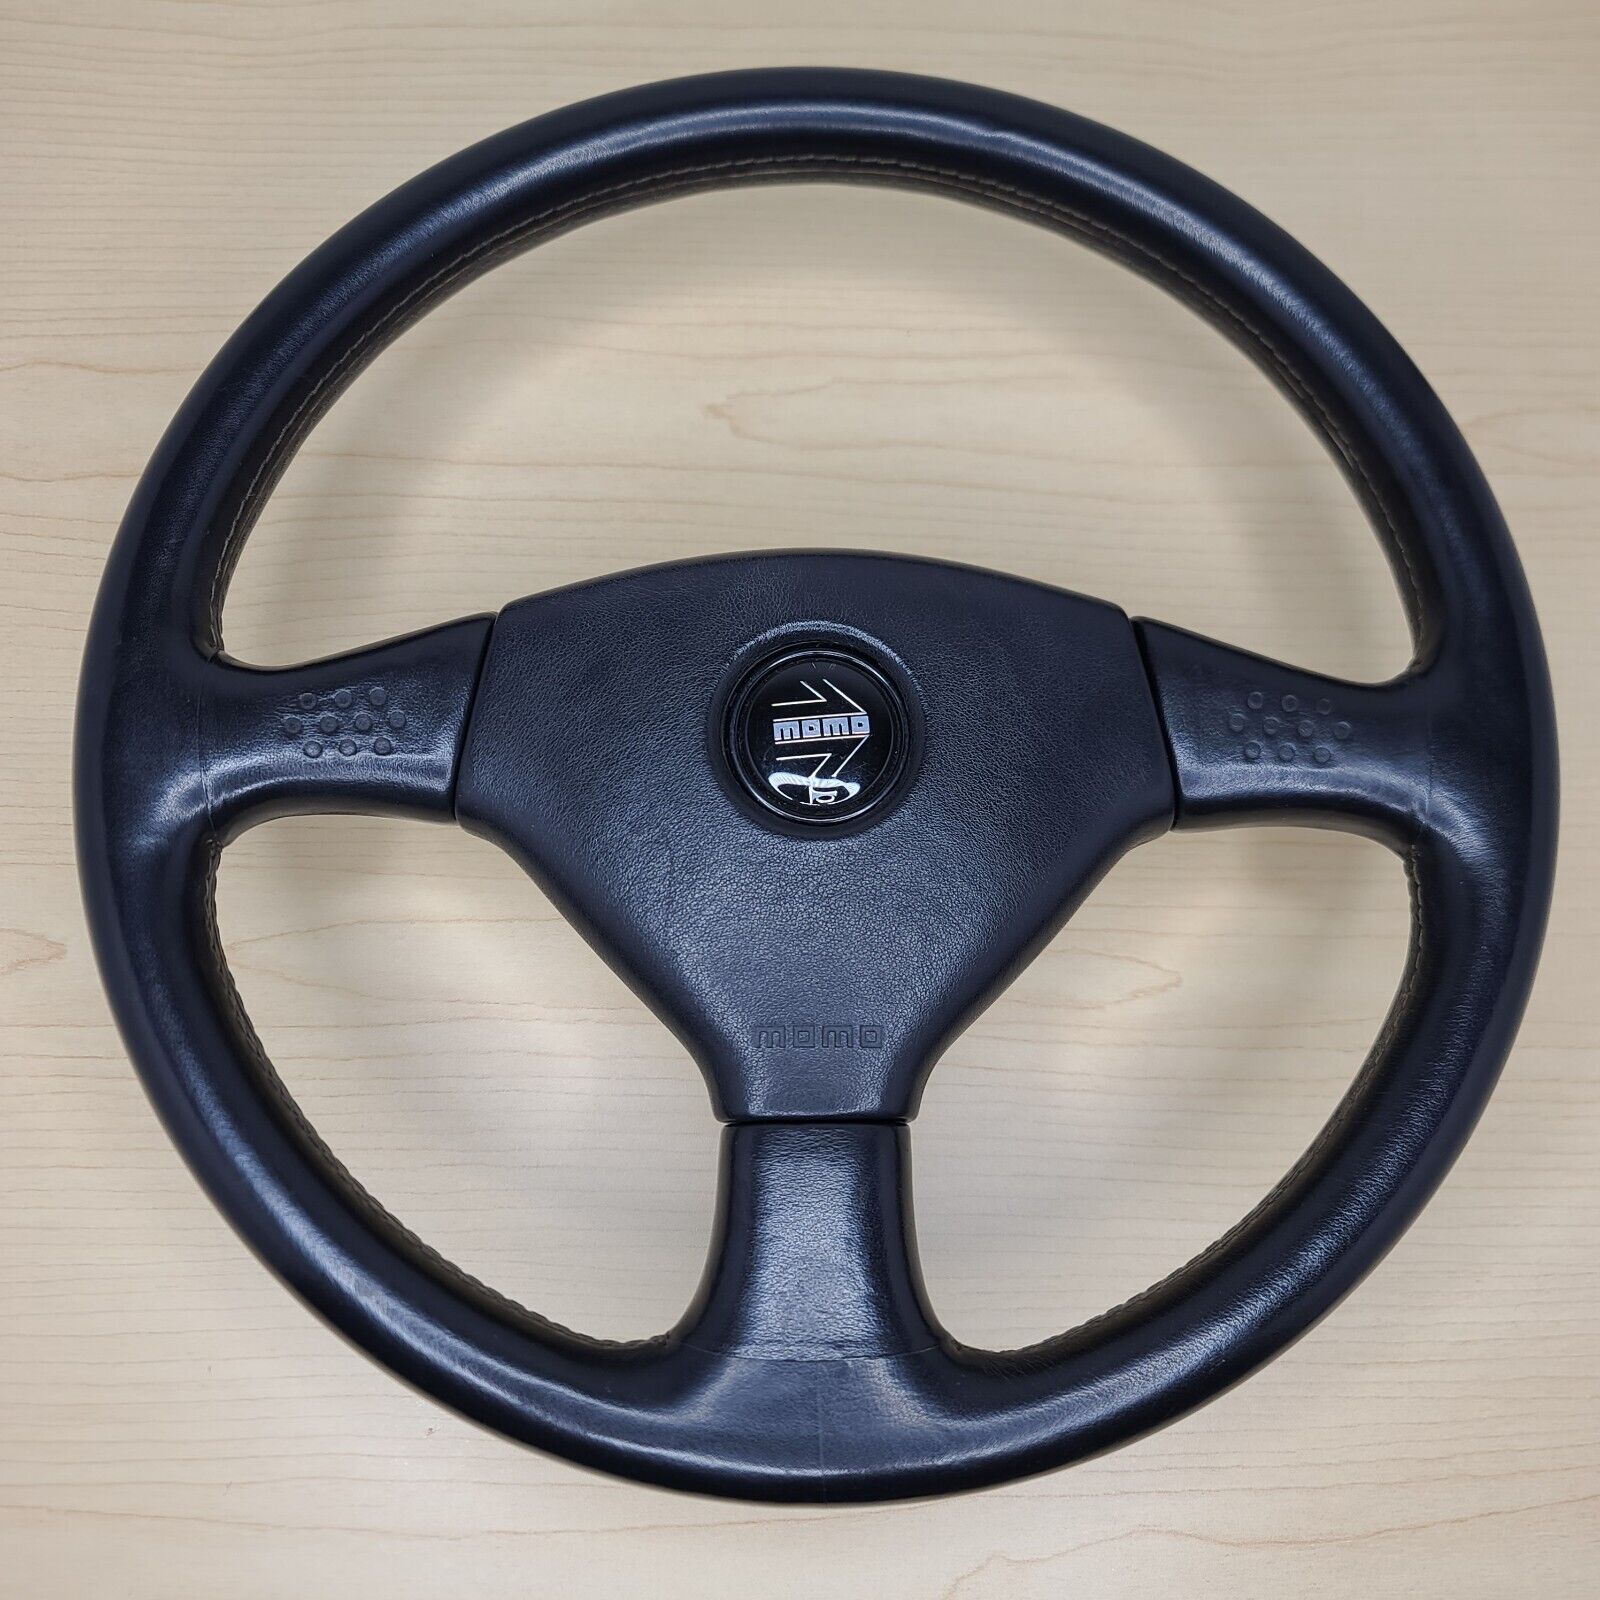 Momo Cobra III racing steering wheel like Speed 3 Ghibli rare vintage JDM #10